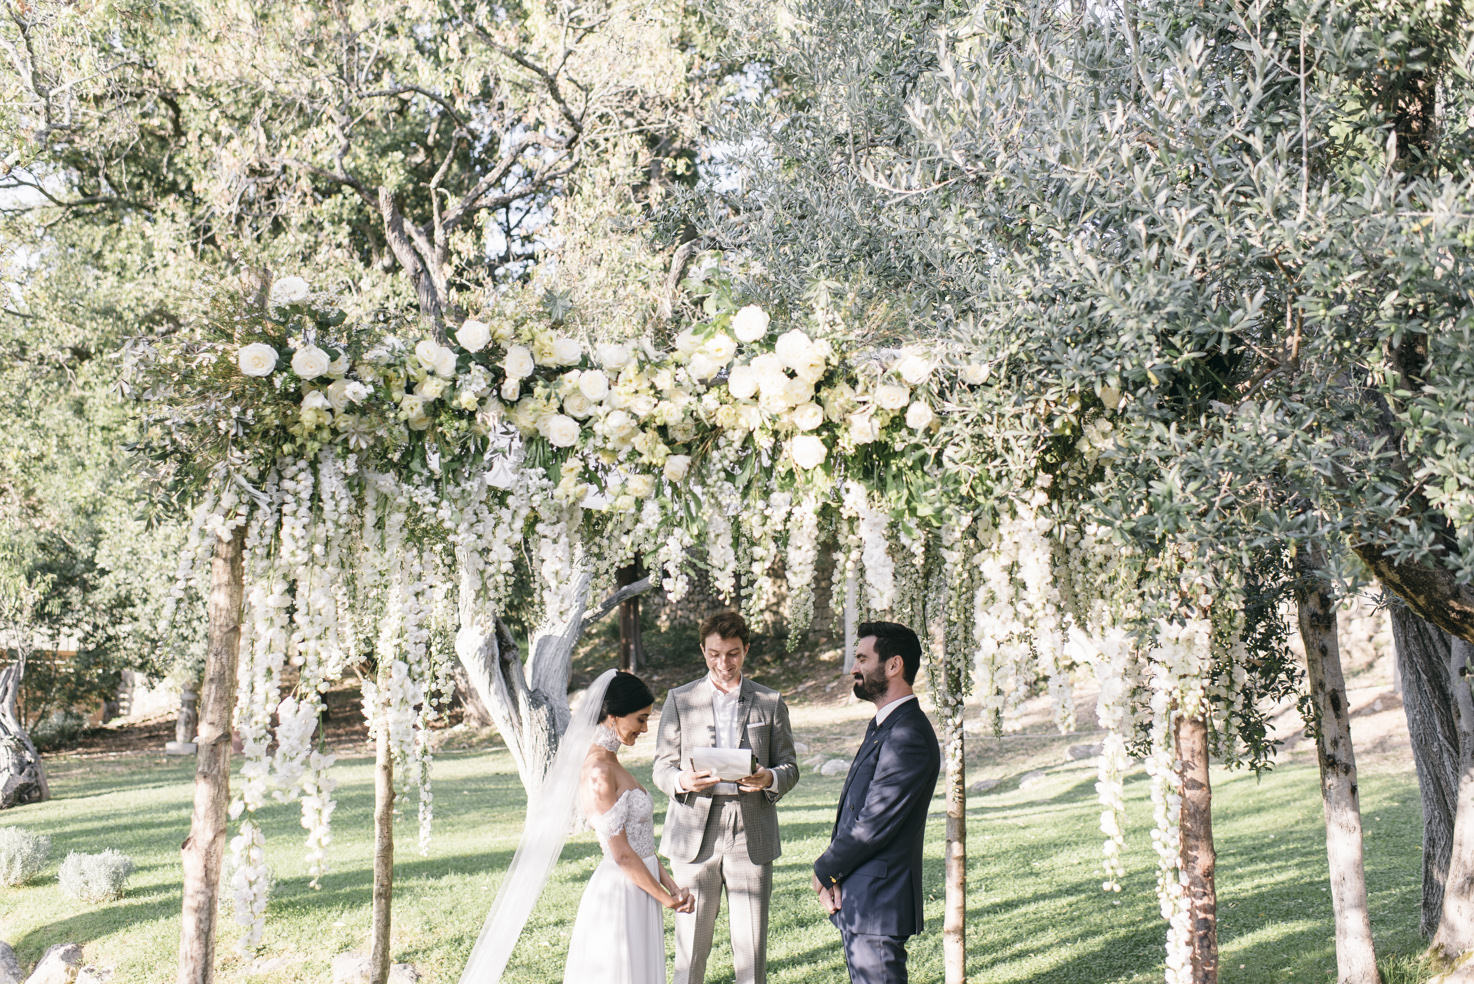 Wedding ceremony at Castello di Vicarello